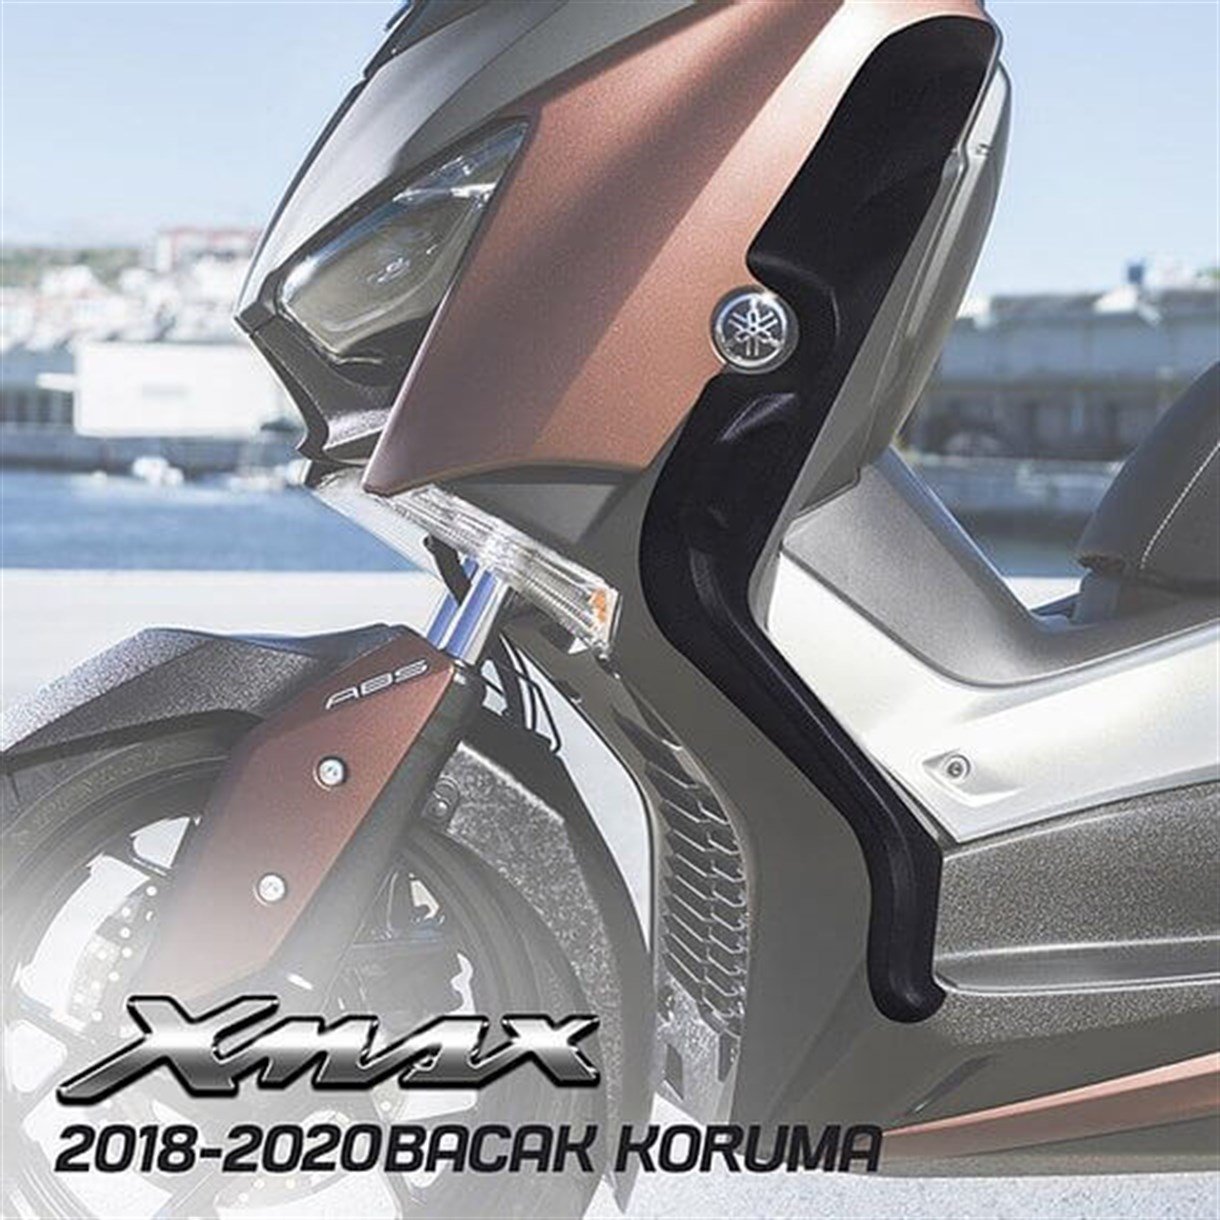 Yamaha X-Max Bacak ve Grenaj Koruma Takozu